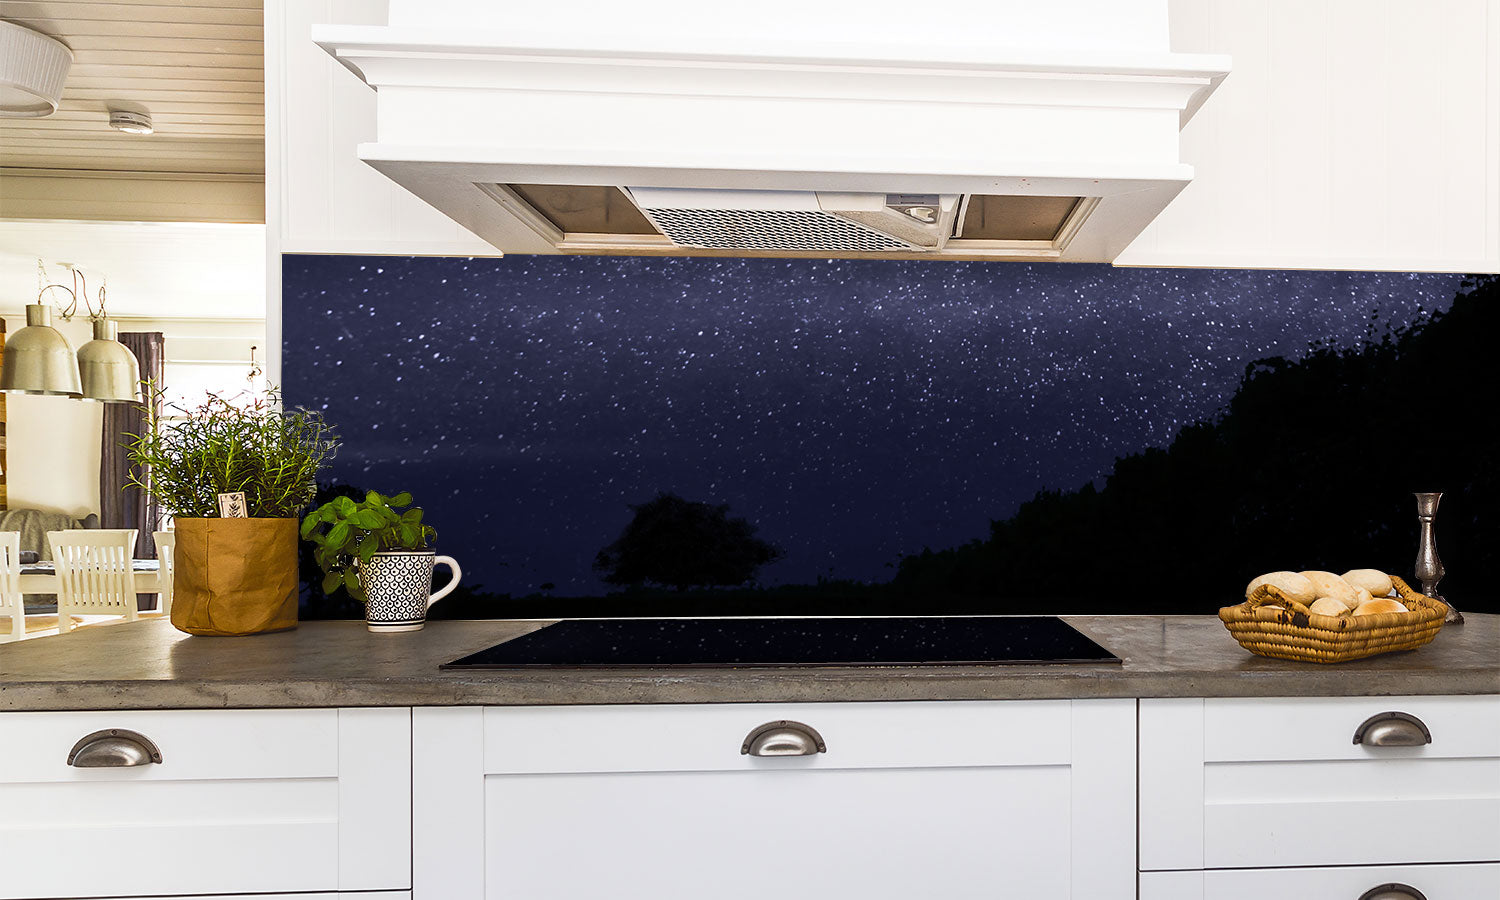 Kuhinjski paneli Dark night - Stekleni / PVC plošče / Pleksi steklo - s tiskom za kuhinjo, Stenske obloge PKU0267 - Life-decor.si